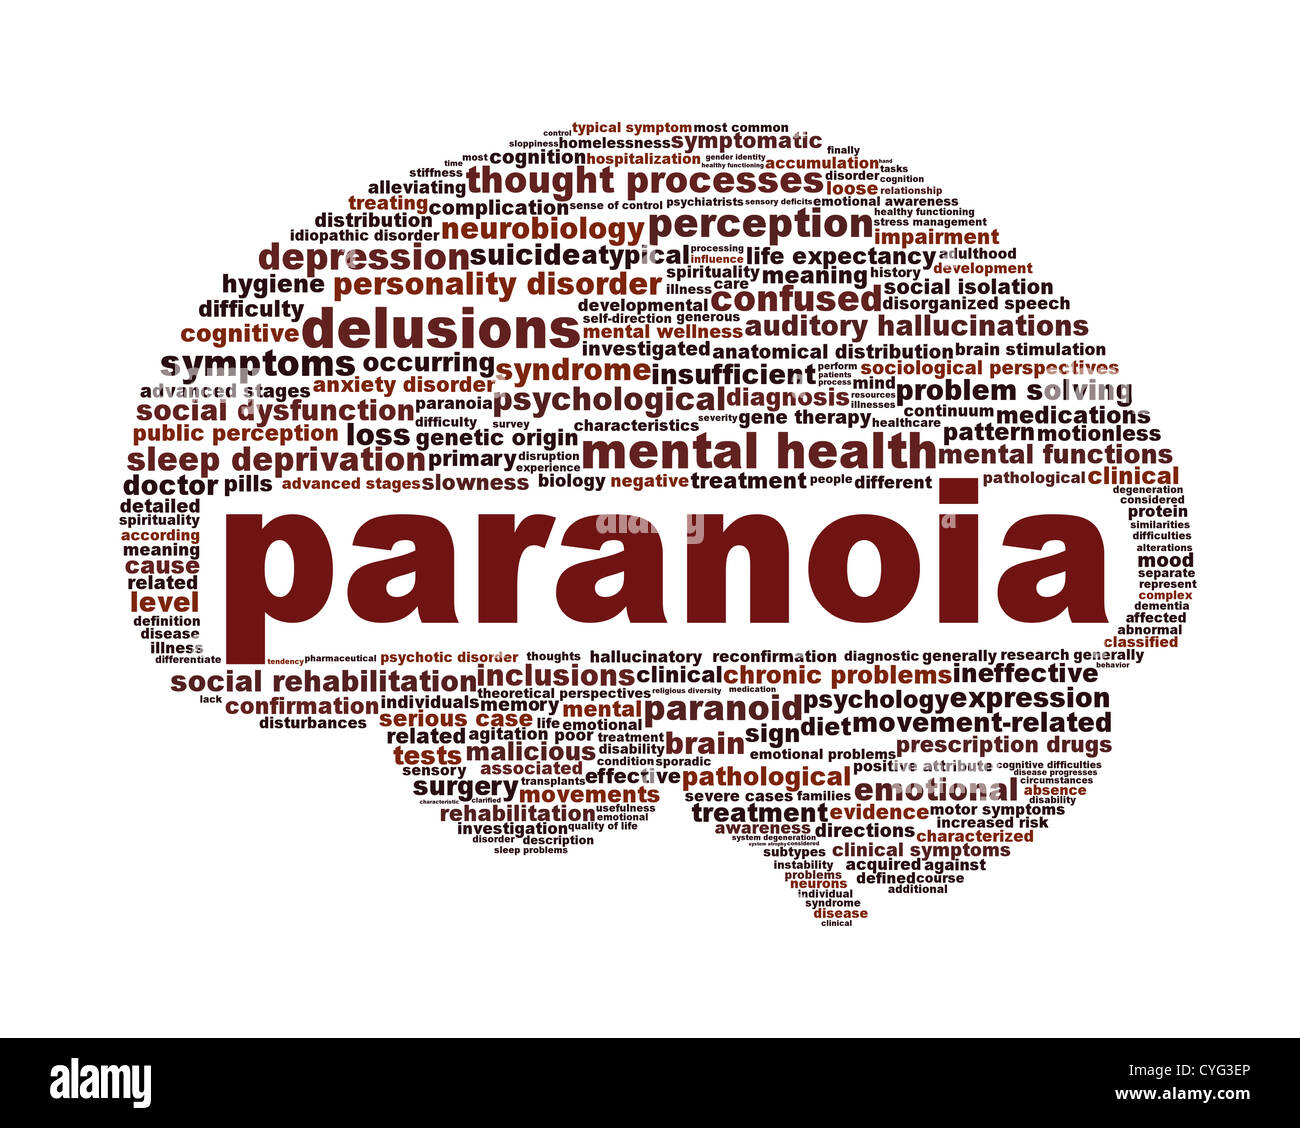 paranoia-psychische-gesundheit-symbol-design-cyg3ep.jpg